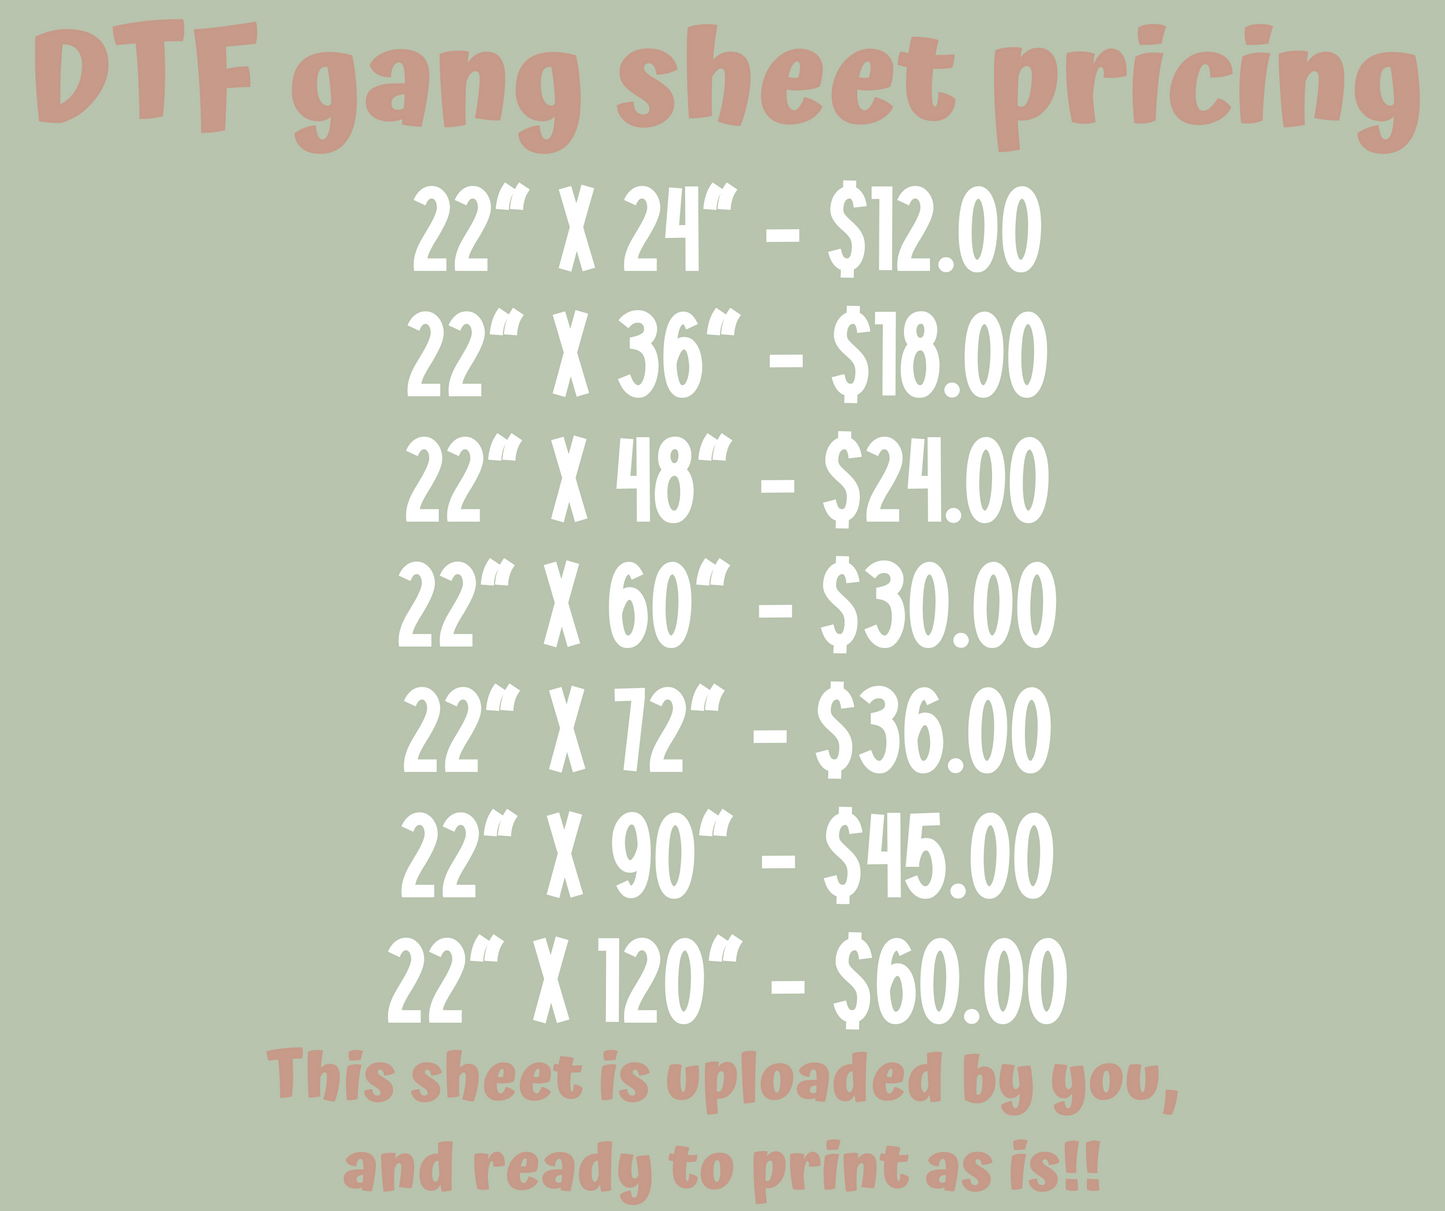 Upload YOUR Gang Sheet